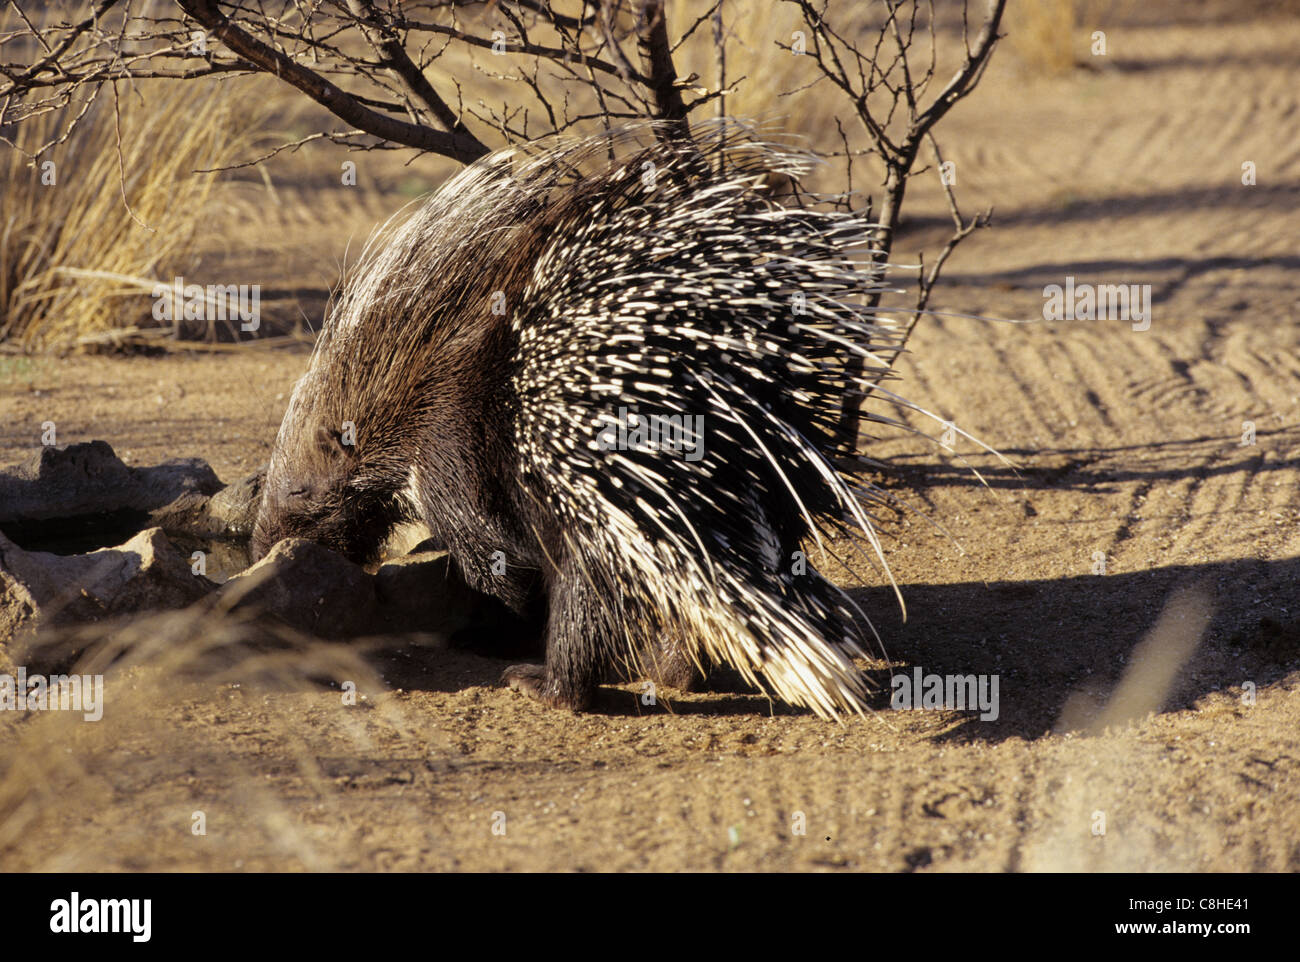 Le porc-épic, l'animal, l'Hystrix, africaeaustalis Istrice, Namibie, Afrique du Sud Banque D'Images